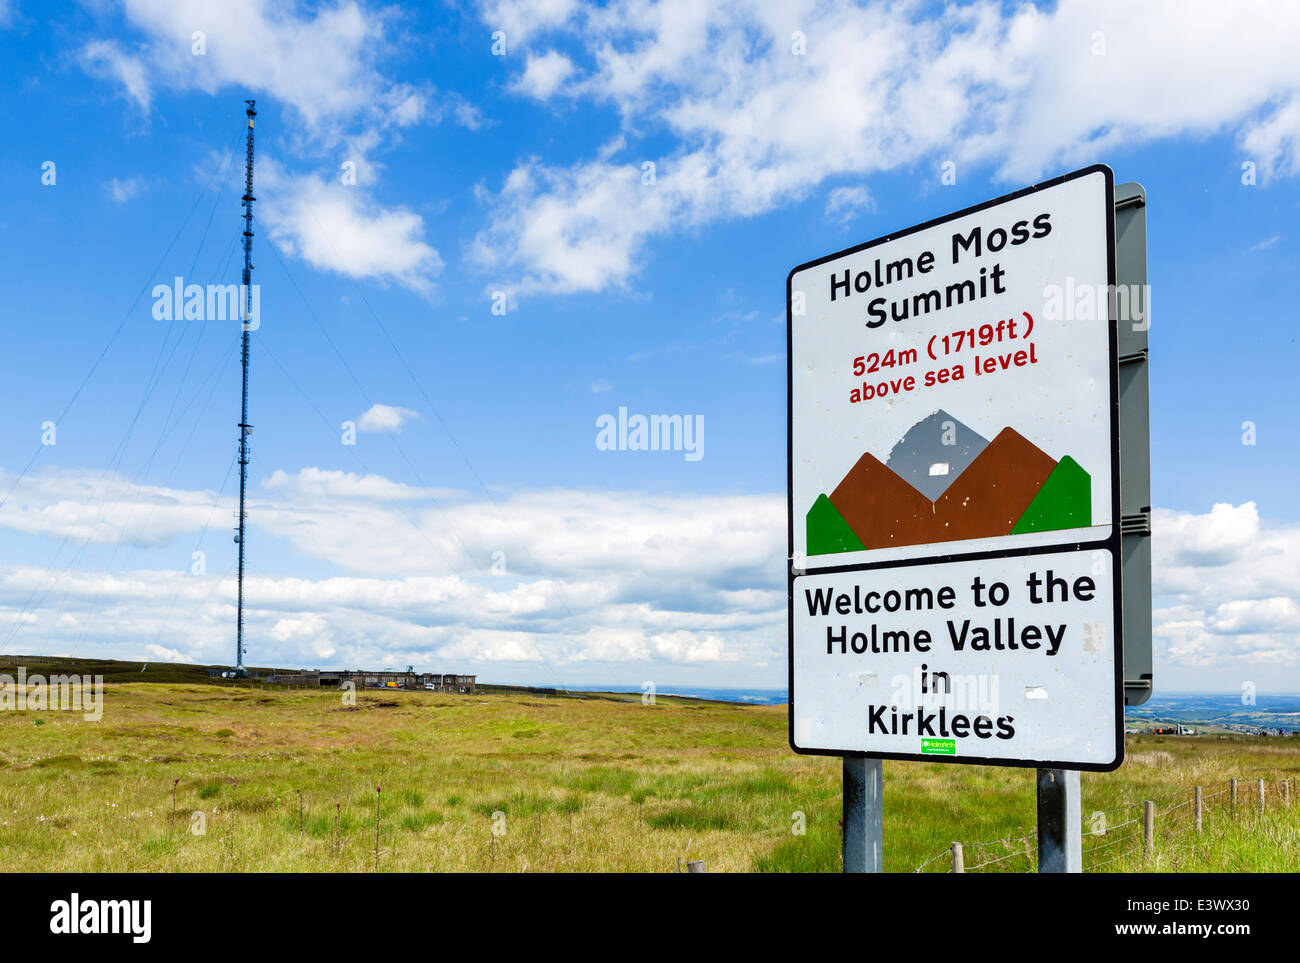 Schild am Gipfel der Holme Moss, einer der steilsten Steigungen in UK Phase 2014 W Yorkshire, UK, Kirklees, Tour de France, Holme Valley Stockfoto